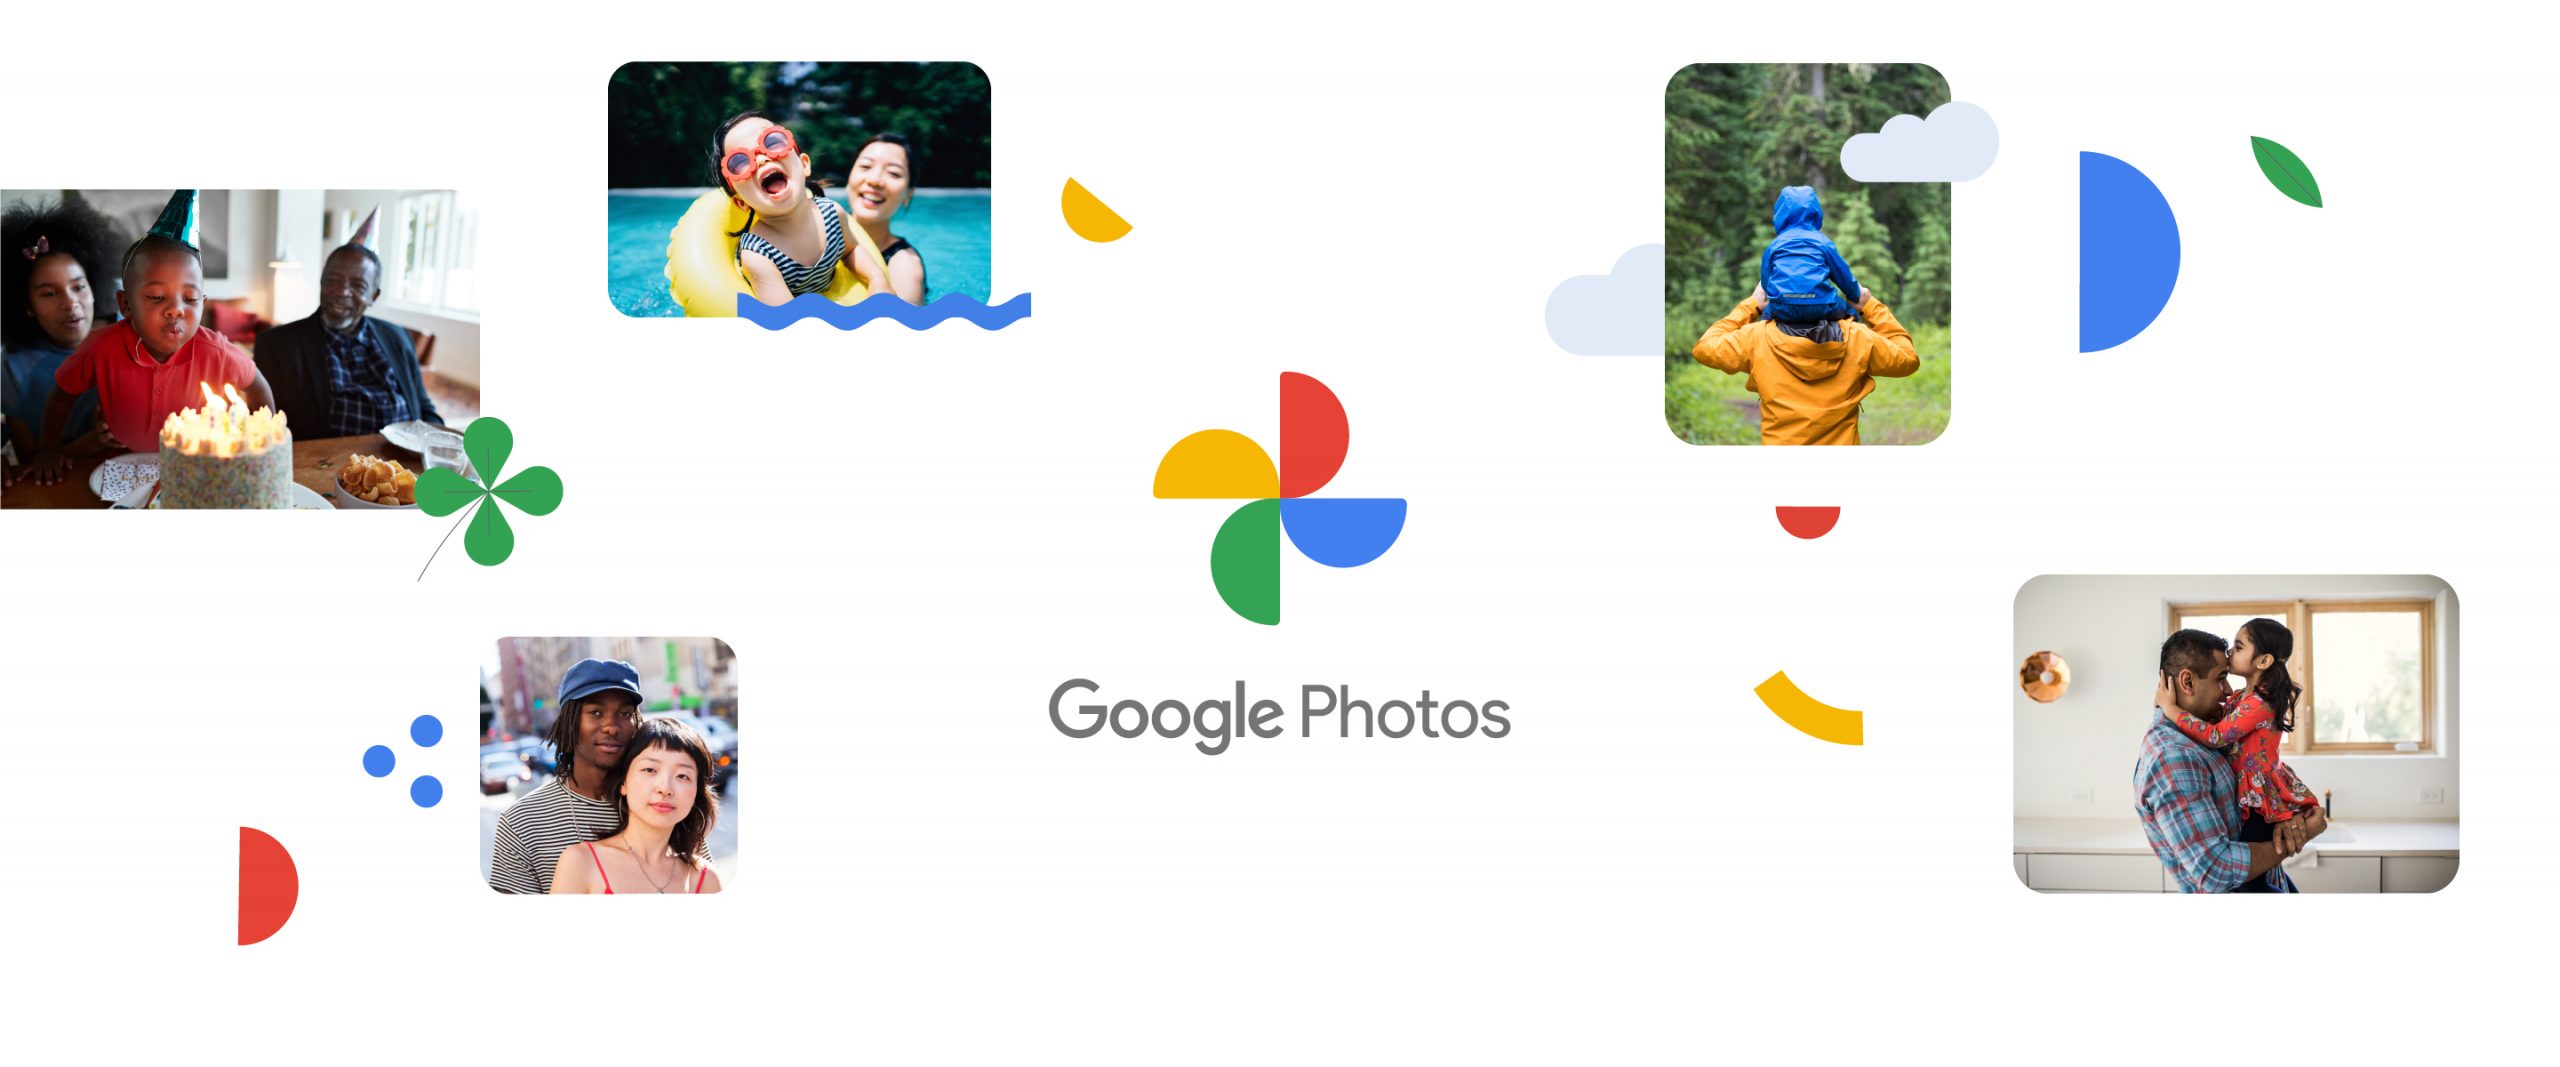 Google Photos hiện có thể đồng bộ hóa các hình ảnh yêu thích của bạn với ứng dụng Apple Photos - Đây là cách kích hoạt nó